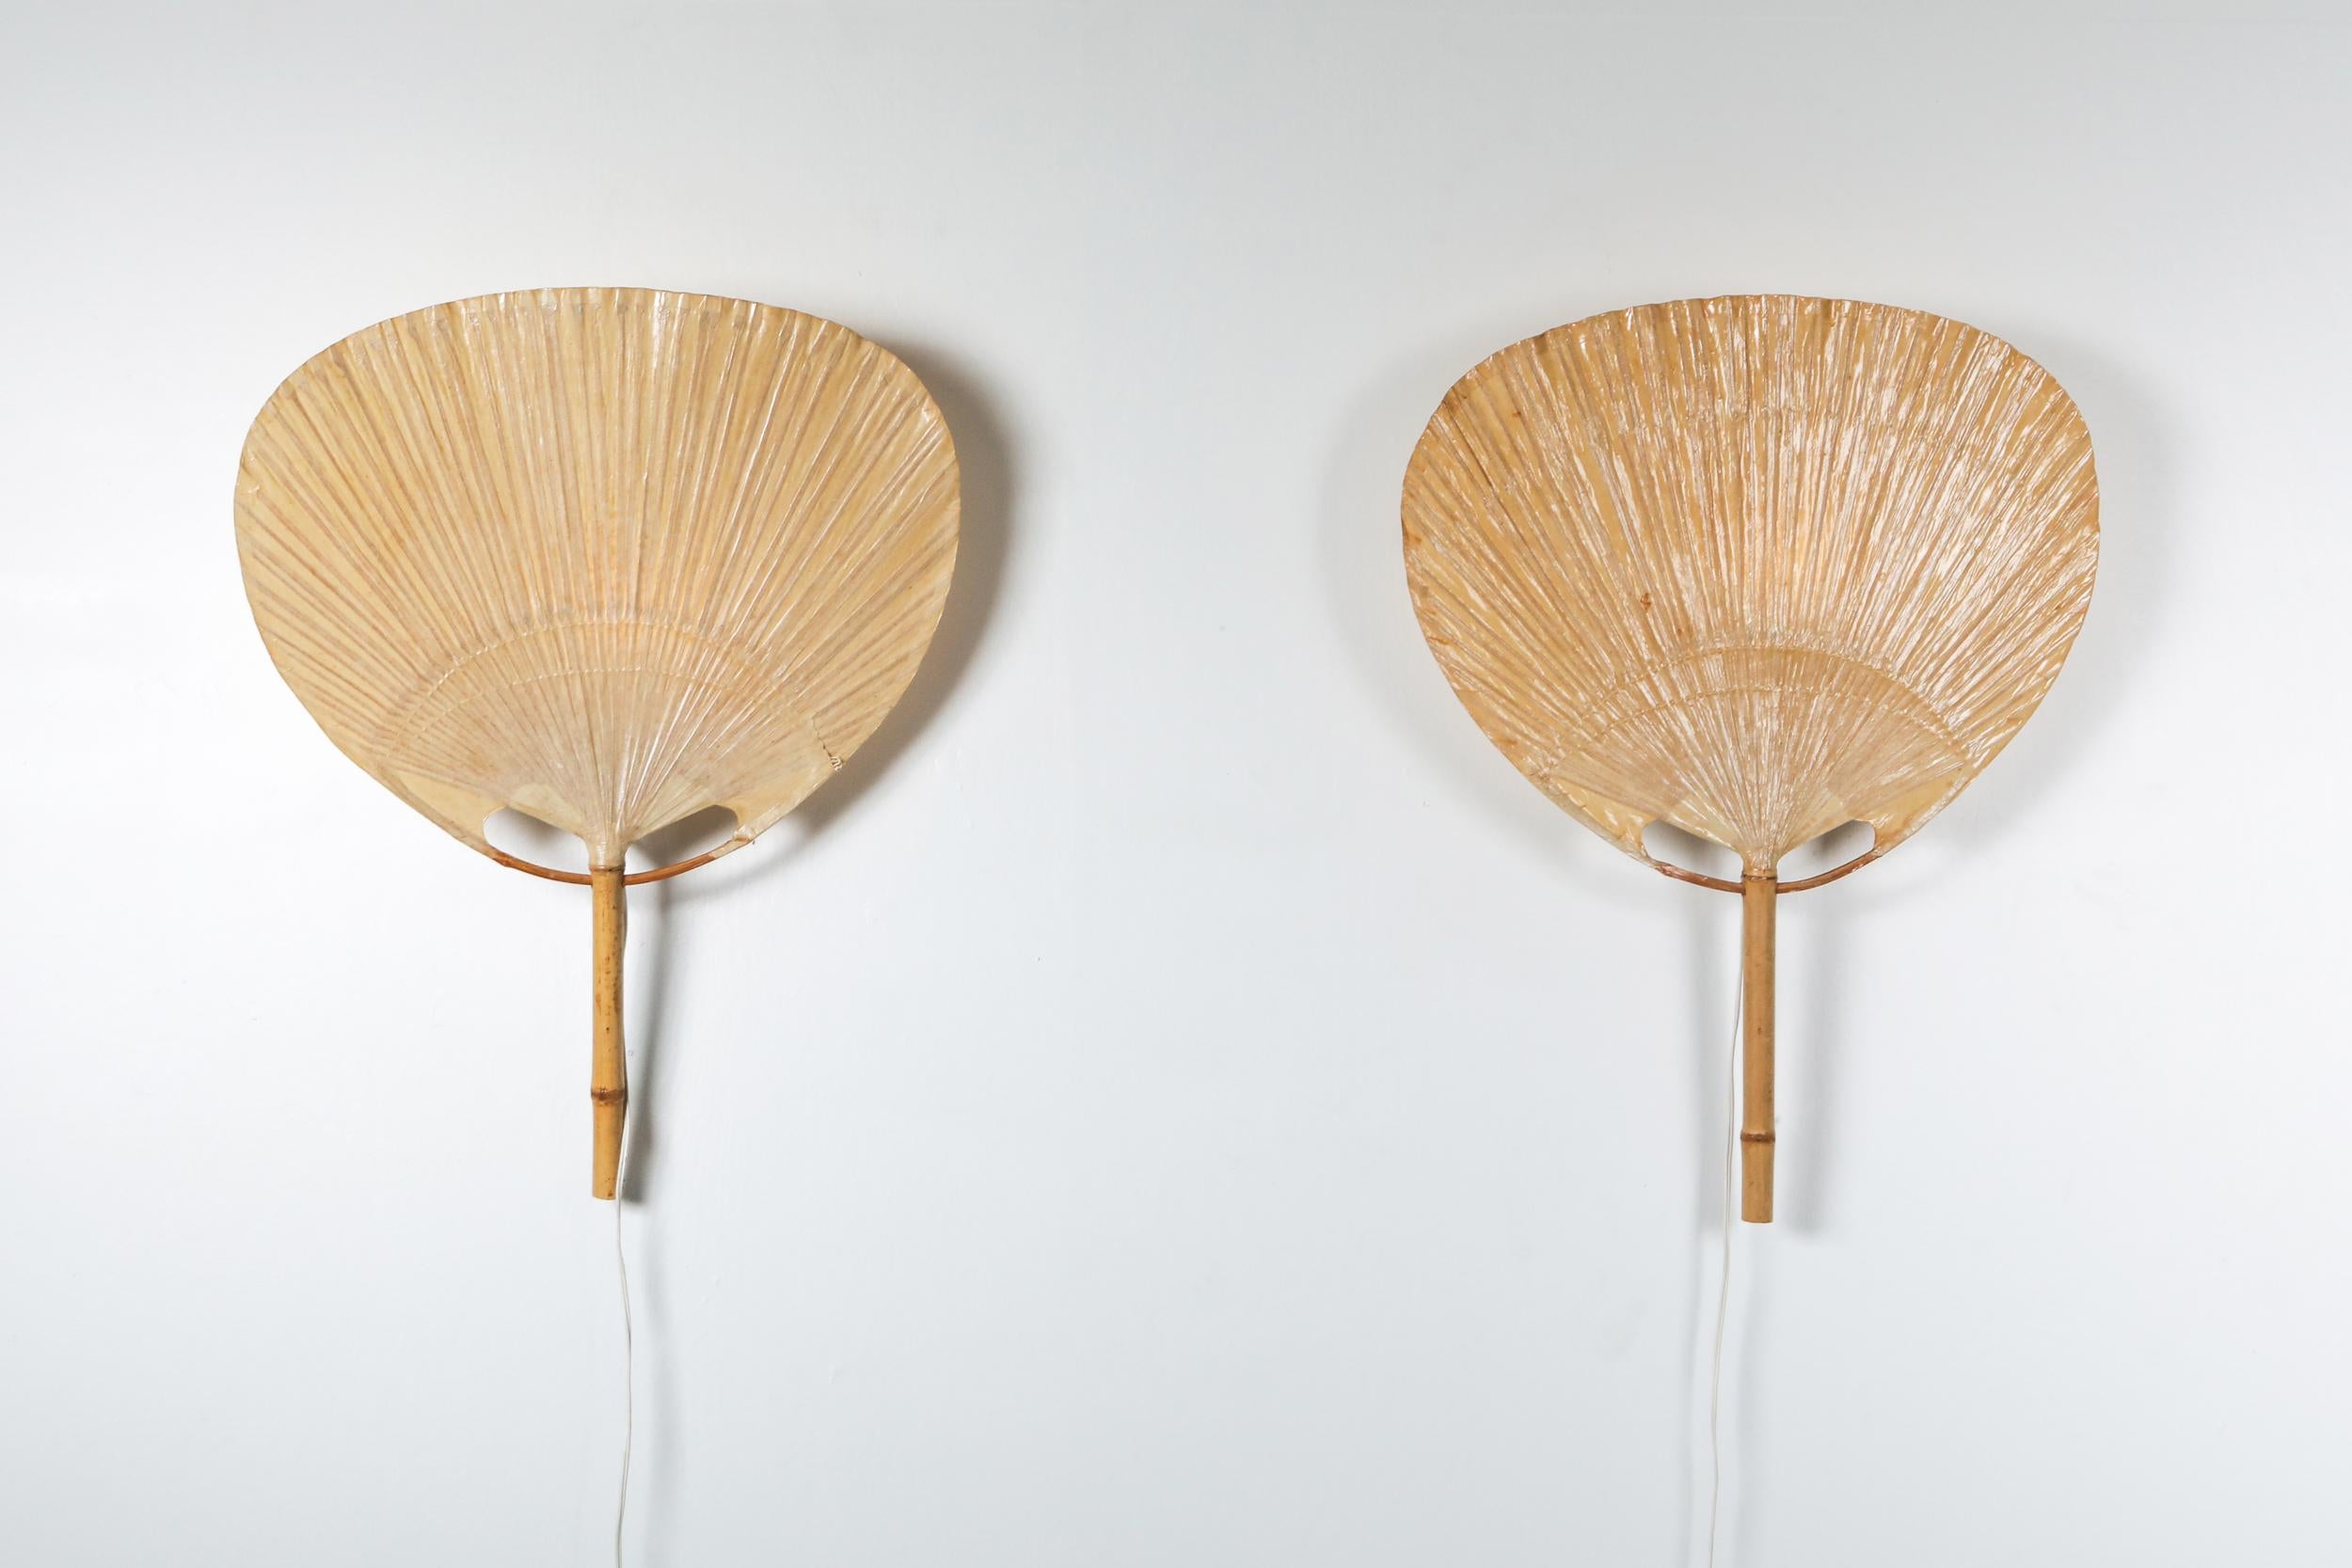 Uchiwa-Wandleuchter von Ingo Maurer. 

Die Lampen wurden 1977 aus Bambus und japanischem Reispapier handgefertigt. 
Ingo Maurers Interesse an Papier für Lampenschirme war mit seinem Interesse an Japan verbunden. Zwischen 1973 und 1975 stellte er